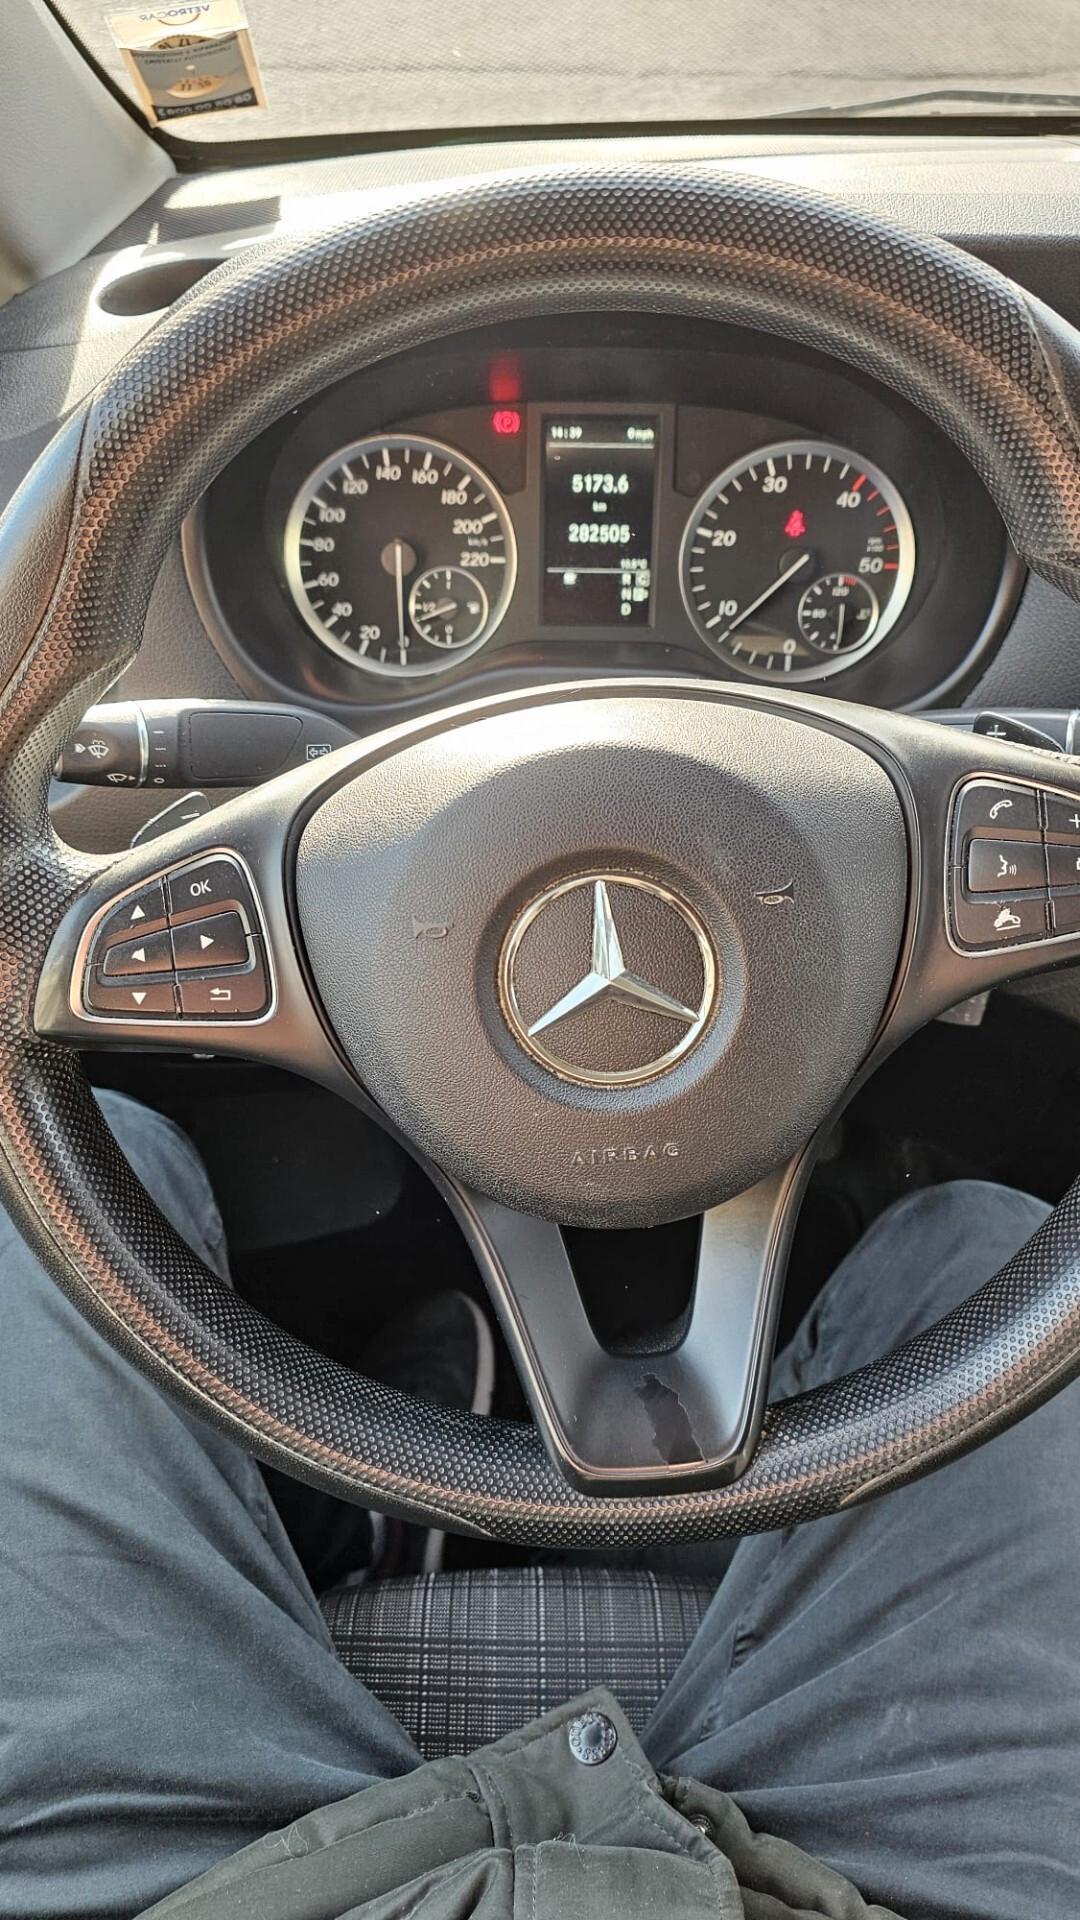 Mercedes Vito 2018 Cambio Automatico